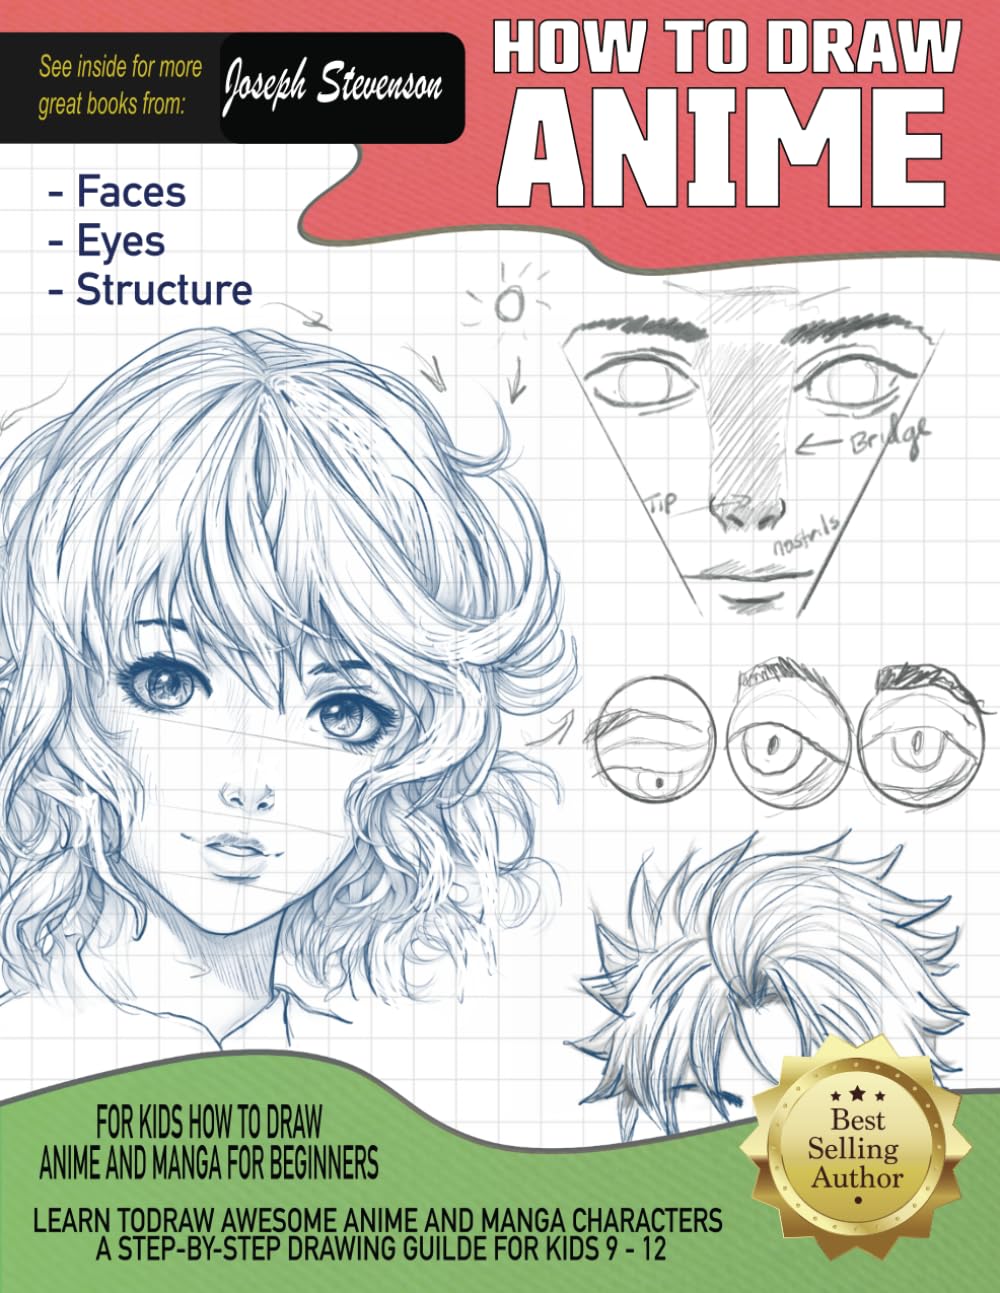 Anime Character Design For Beginners | Bianca Luztre Art | Skillshare